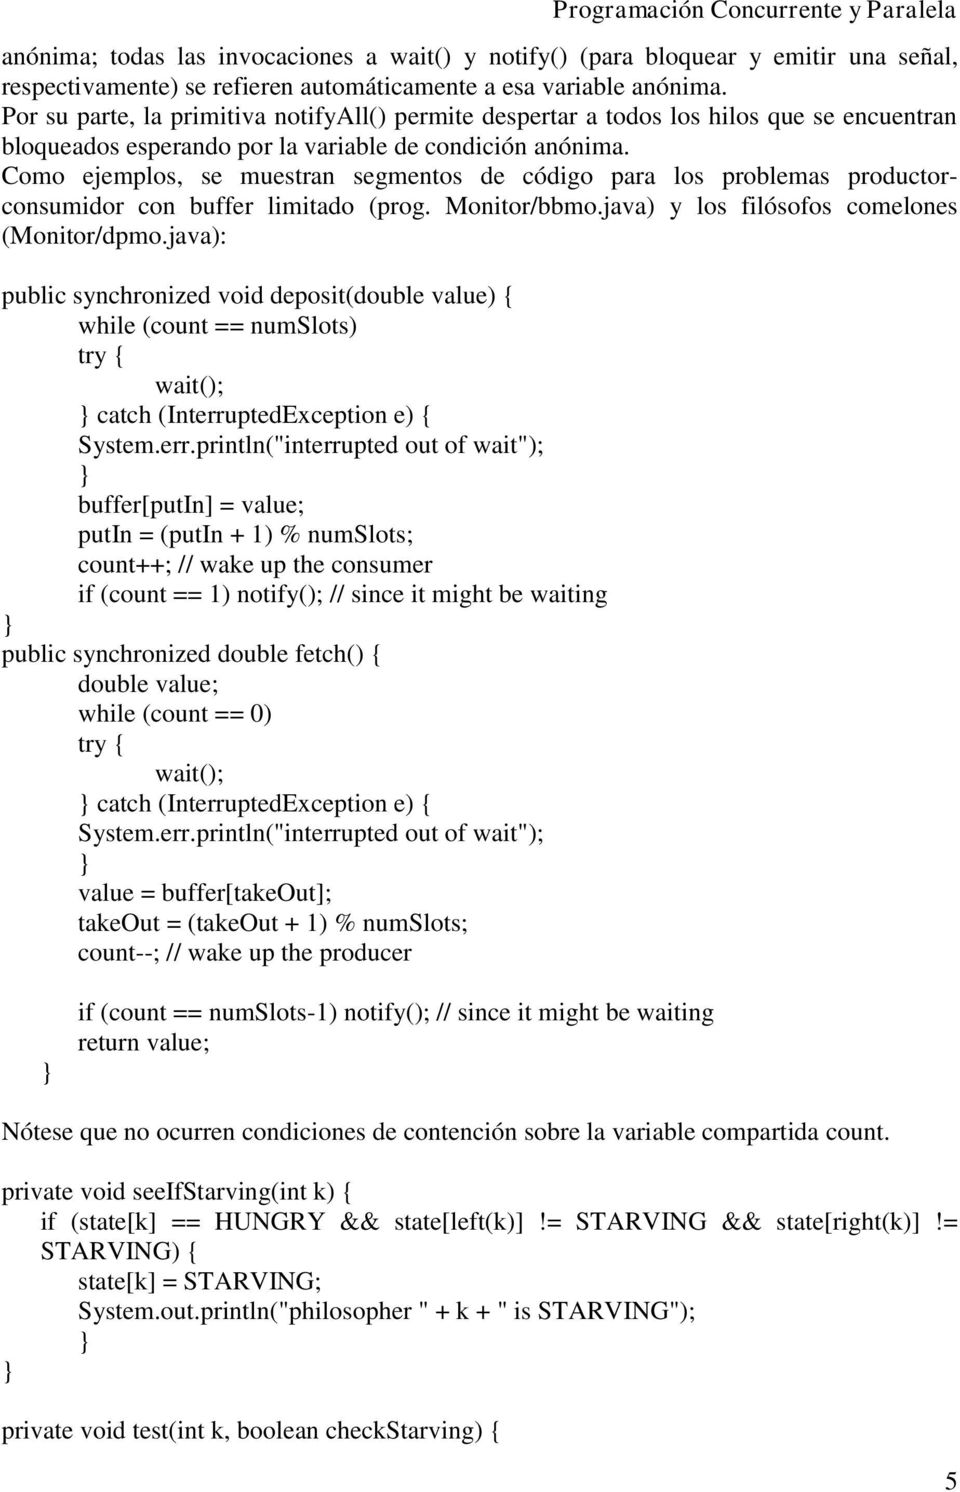 Como ejemplos, se muestran segmentos de código para los problemas productorconsumidor con buffer limitado (prog. Monitor/bbmo.java) y los filósofos comelones (Monitor/dpmo.